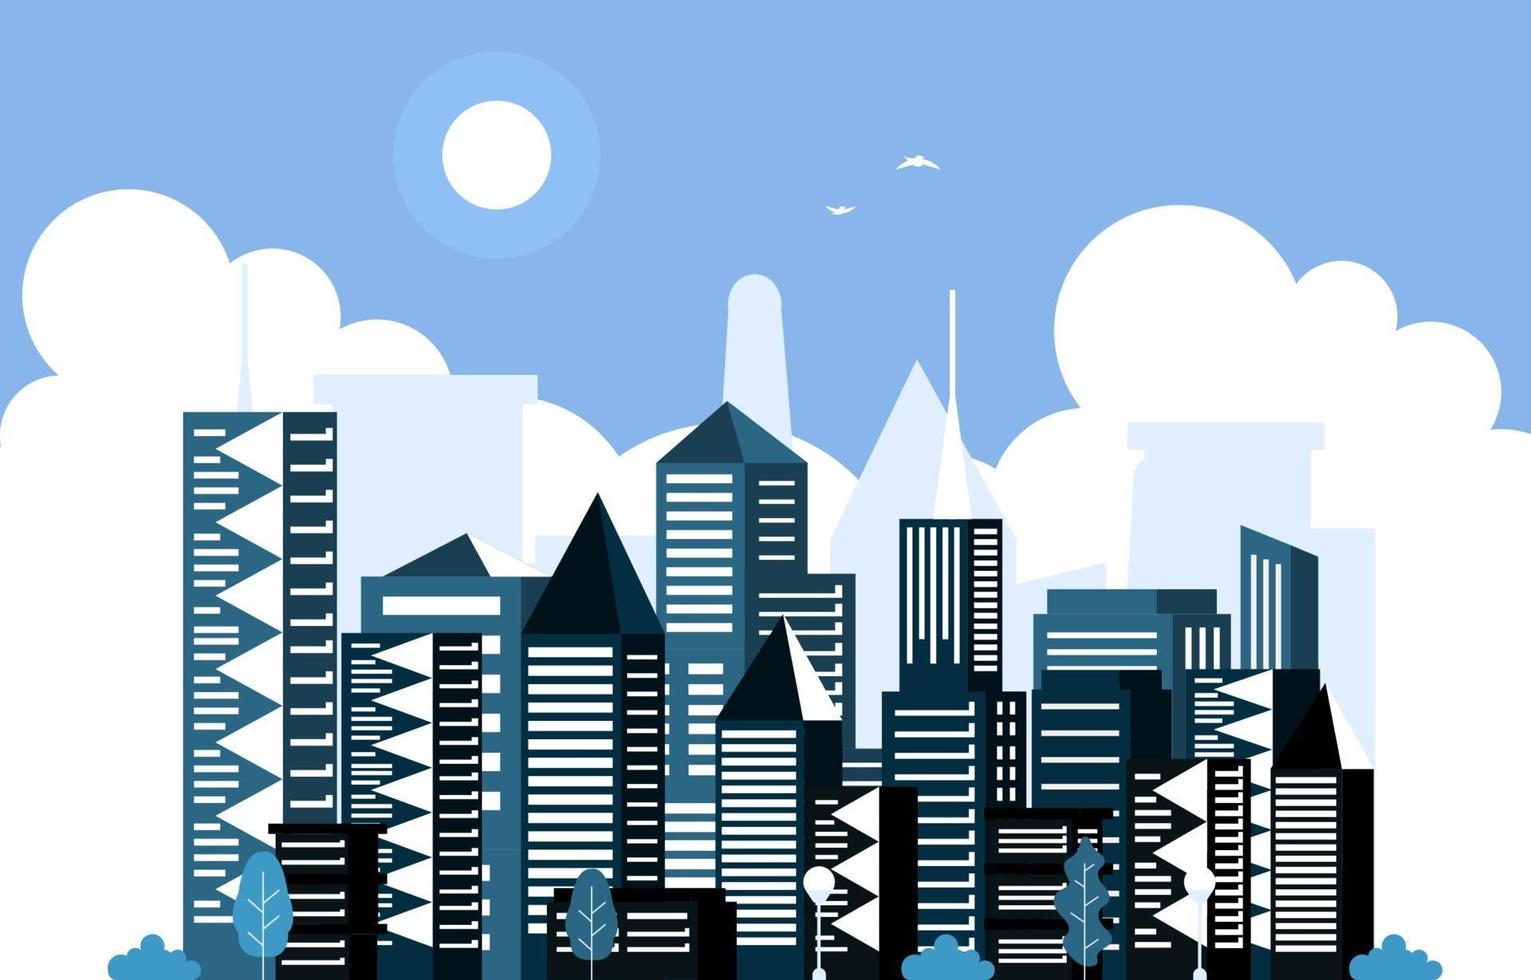 giorno sole città moderna grattacielo edificio paesaggio urbano skyline illustrazione vettore